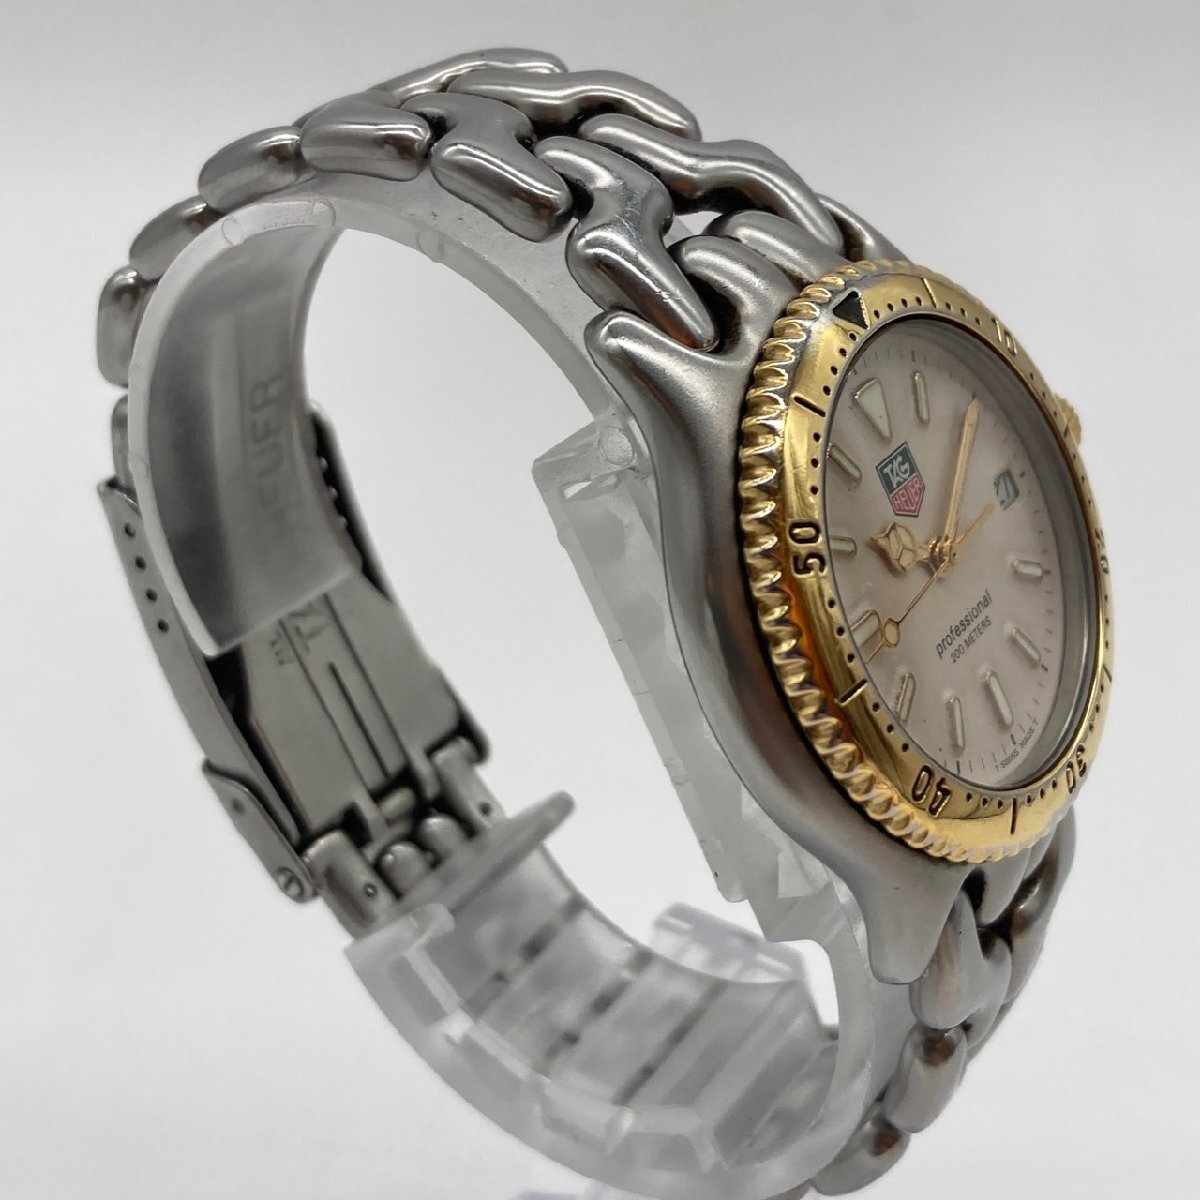 TAG HEUER タグホイヤー セル プロフェッショナル200M メンズ 腕時計 コンビカラー S95 813K_画像3